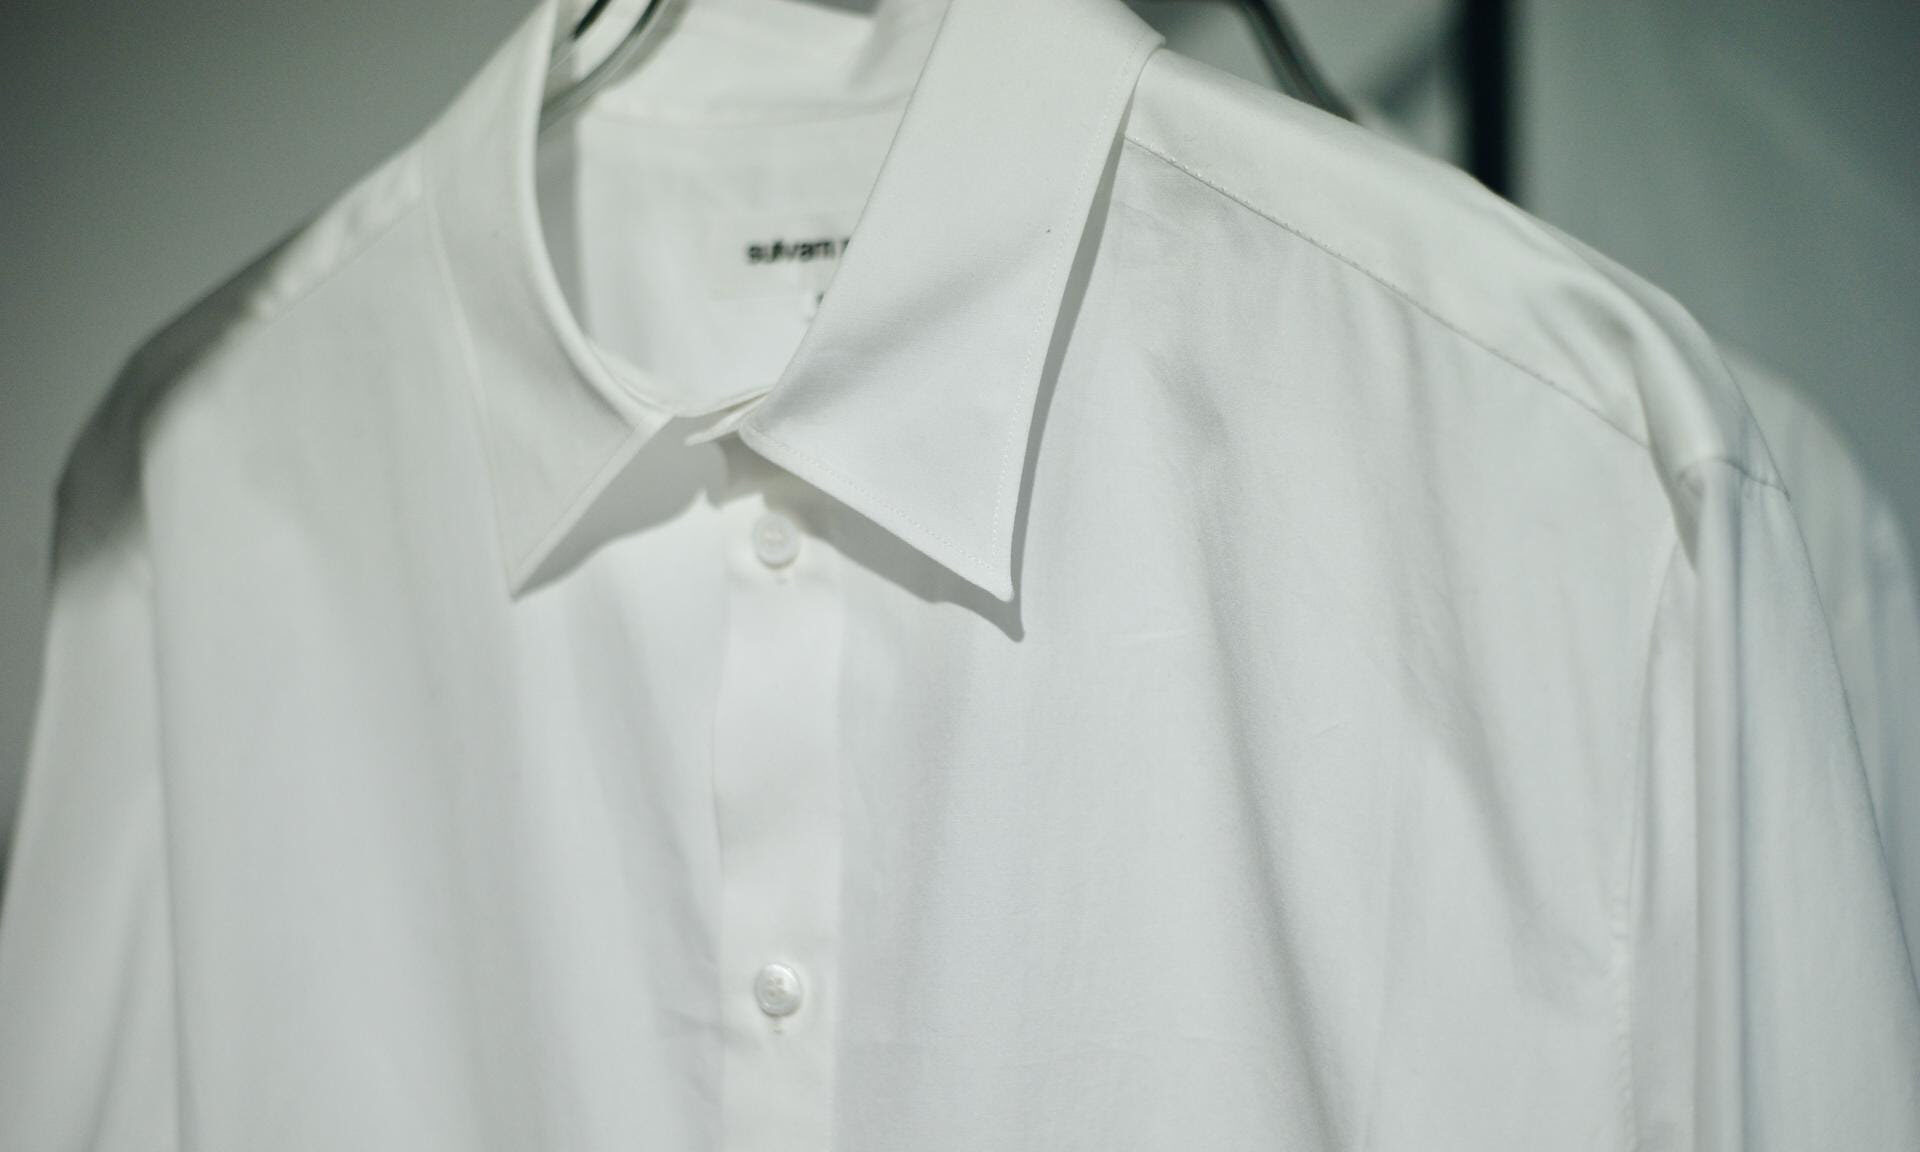 sulvam、Classic lineから手縫いで仕立てた白シャツとネクタイ登場